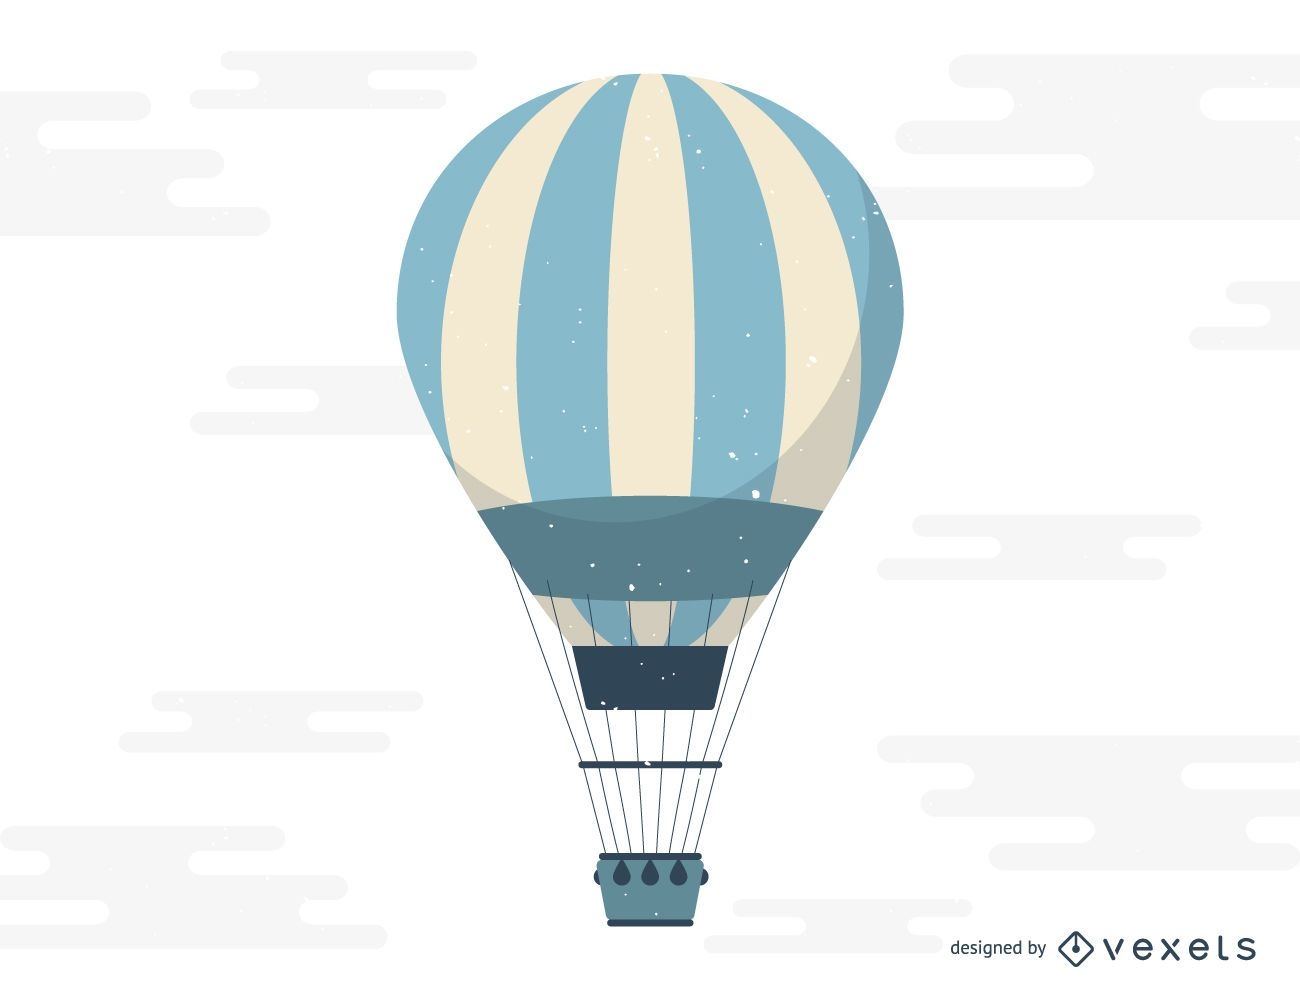 Hot air balloon flight illustration